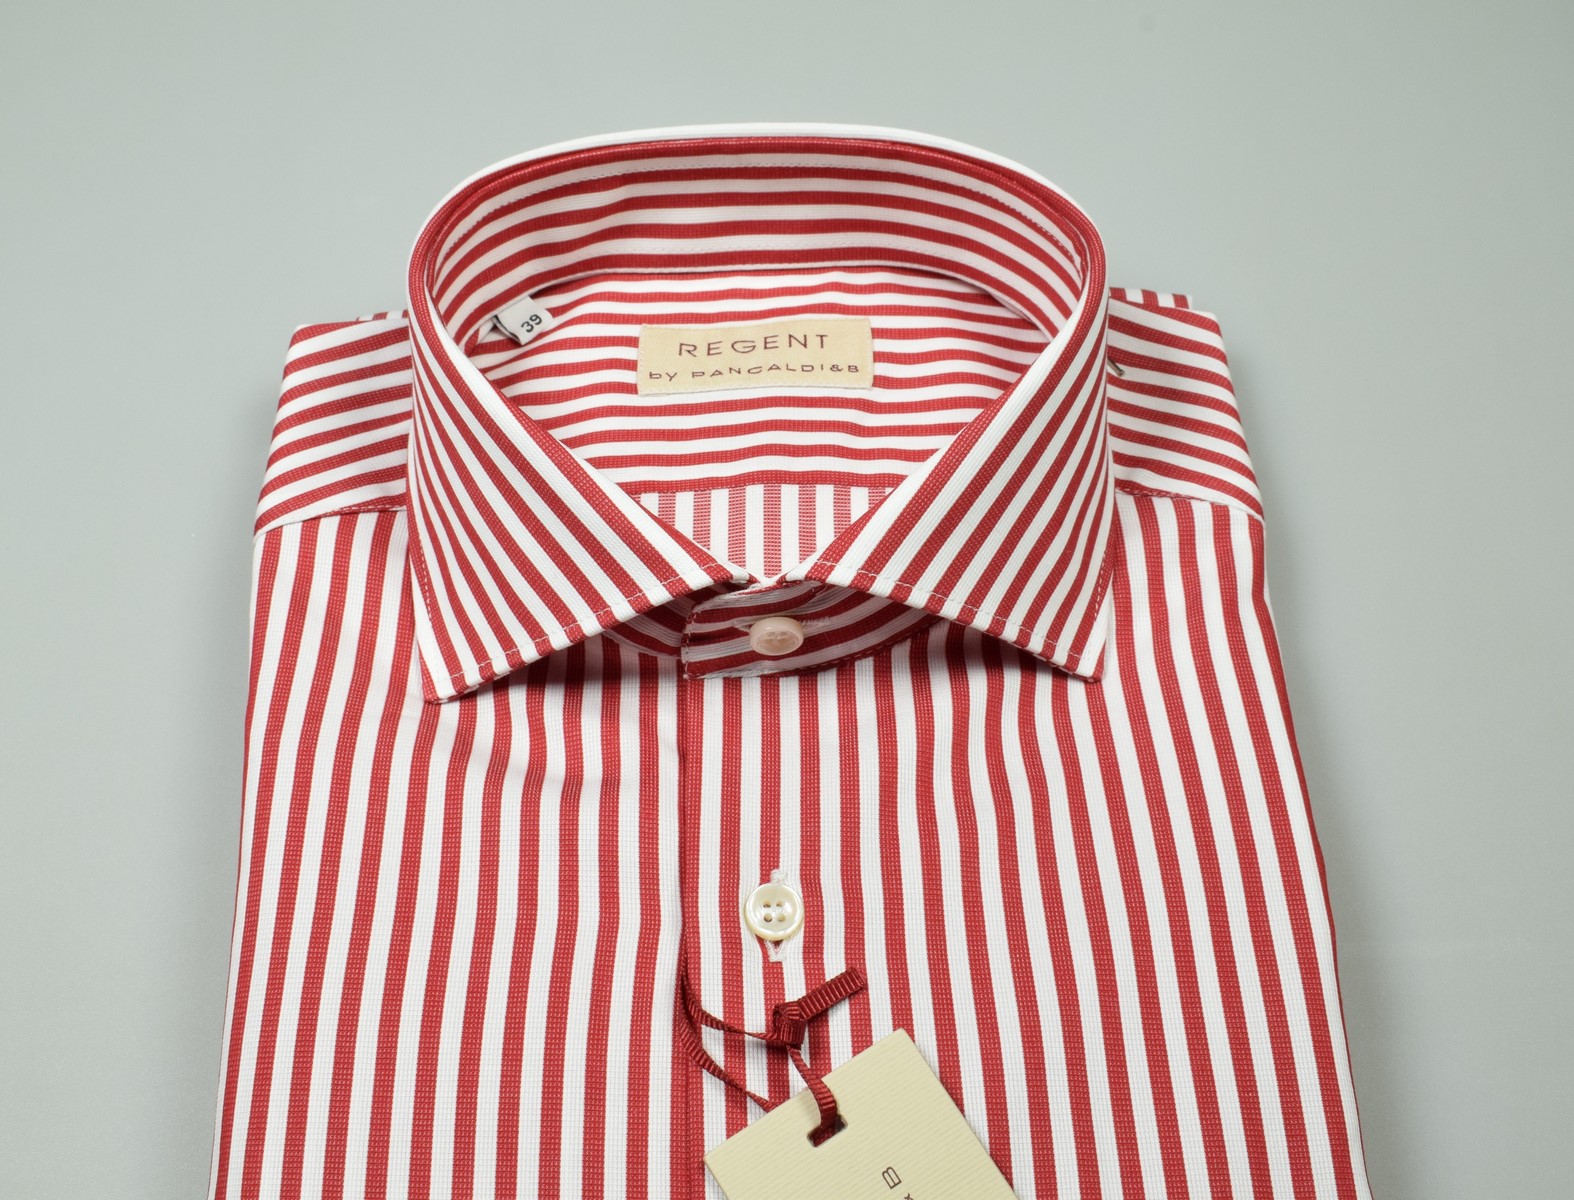 Uomo in camicia girocollo rossa che indossa bandana rossa foto –  Abbigliamento Immagine gratuita su Unsplash